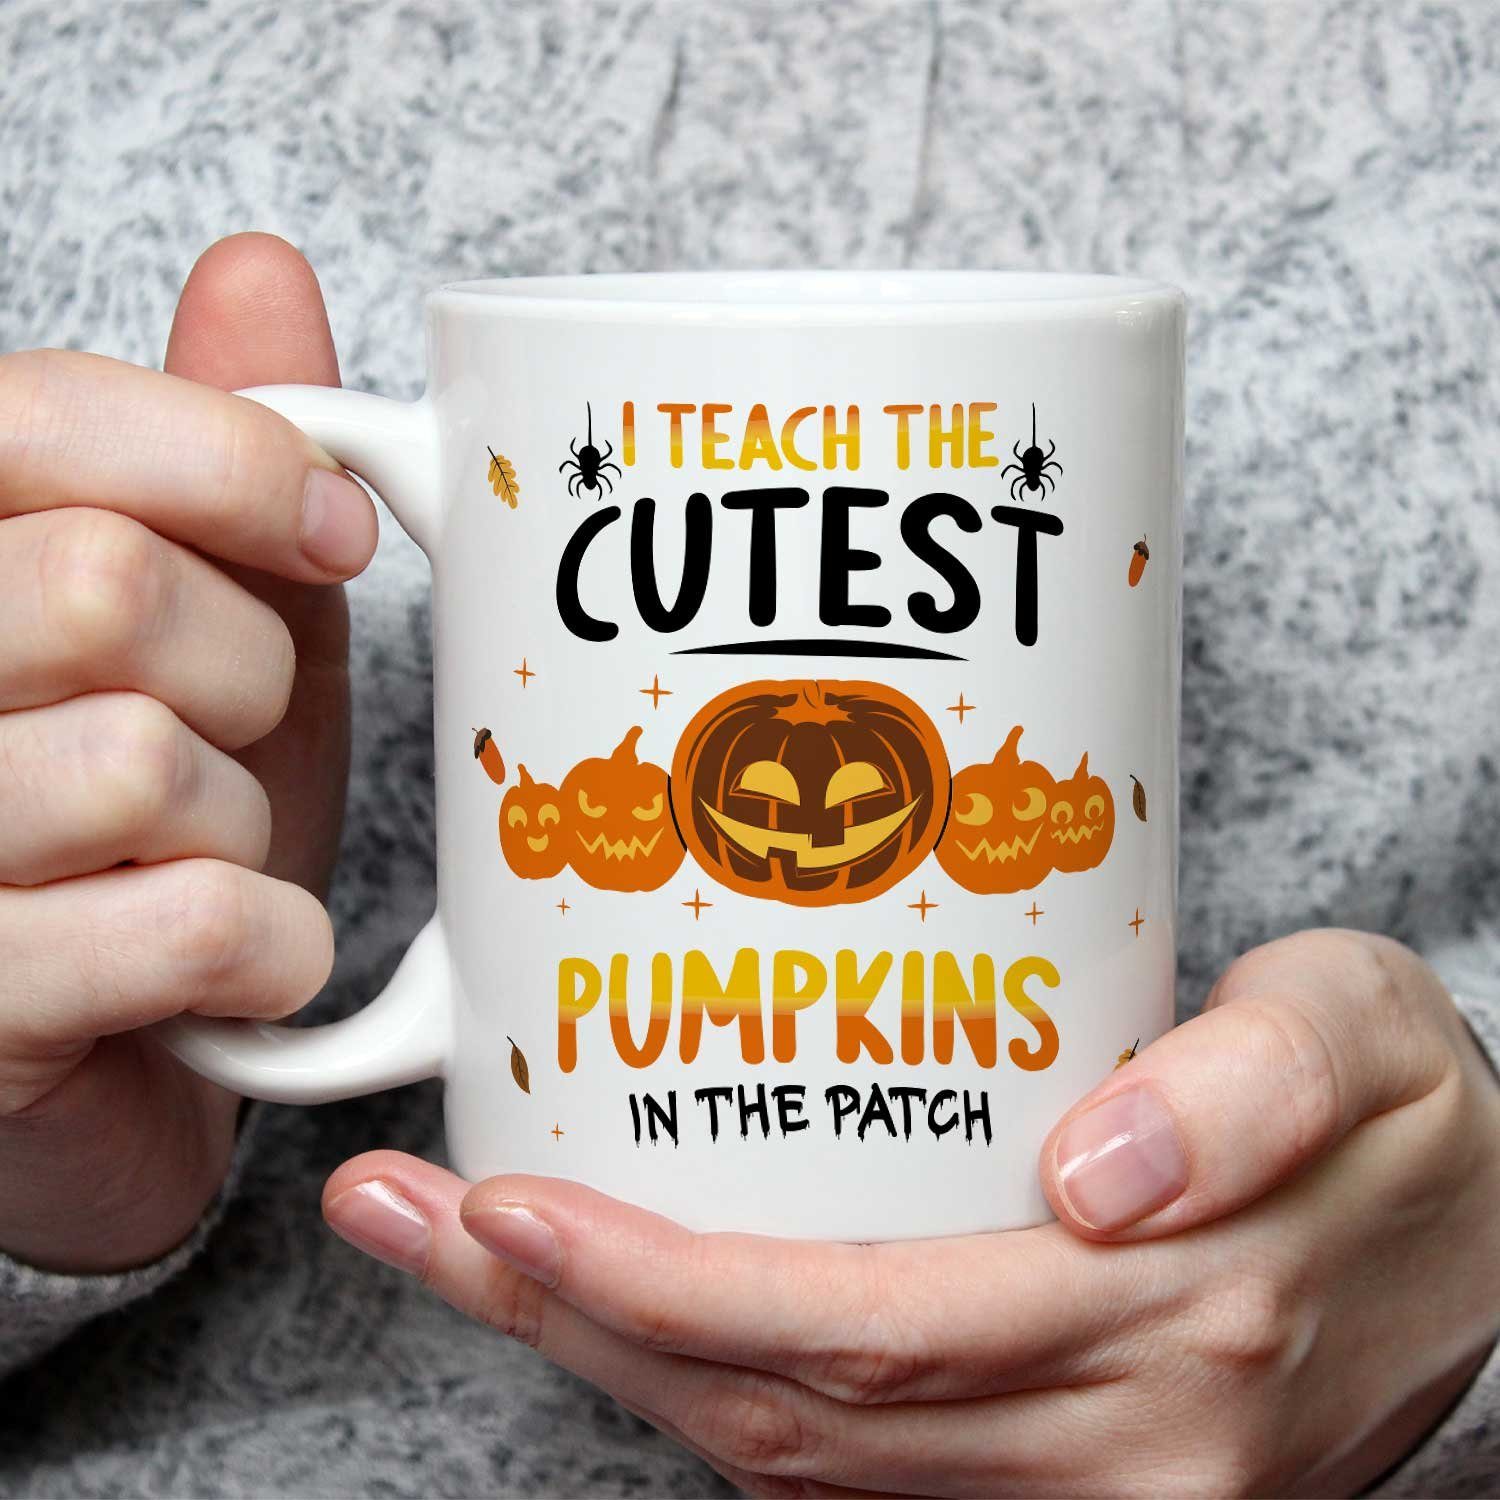 teach Tasse Tasse I Schaurige mit Weiß the - Pumpkins Halloween GRAVURZEILE Spruch cutest -